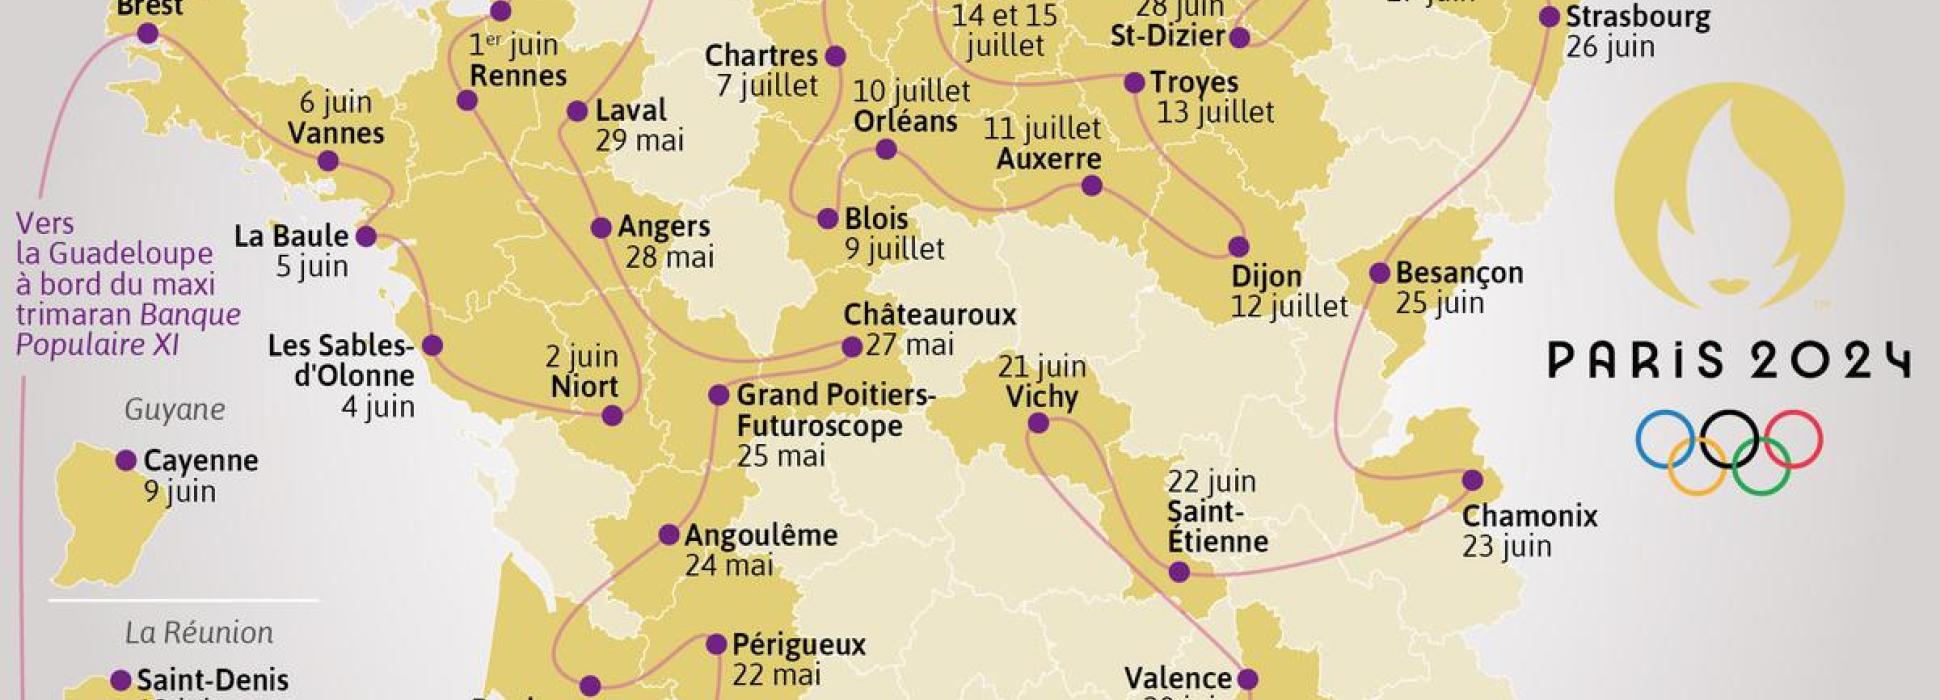 Les villes de Caen, Niort, Le Havre et Troyes accueilleront la flamme olympique